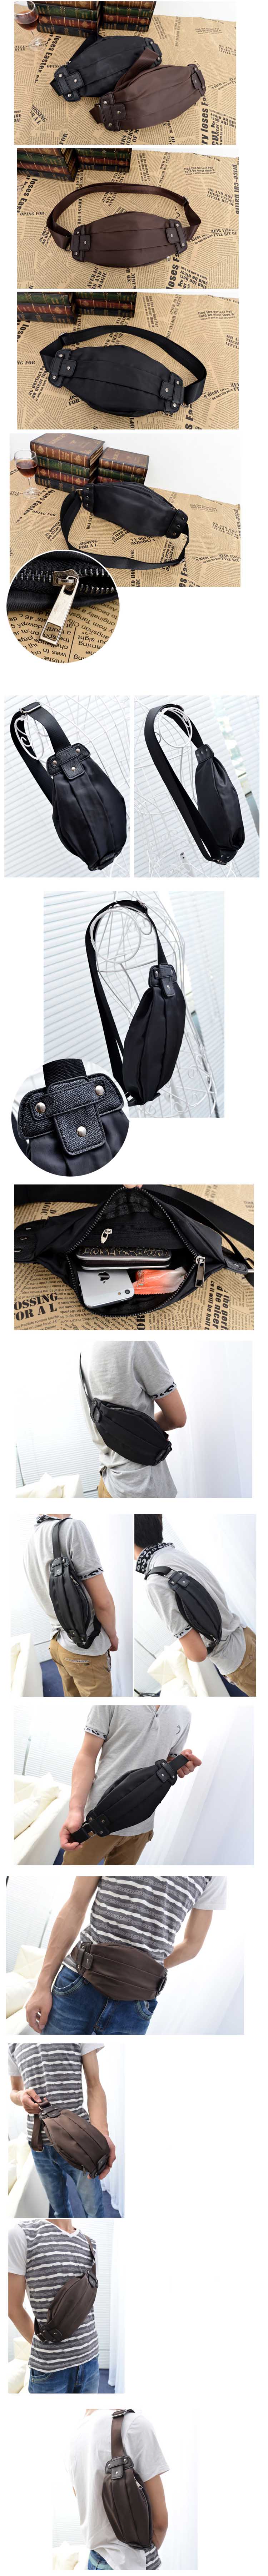 jual tas pinggang pria, terbuat dari bahan polyester , temukan koleksi tas pinggang pria lain nya hanya di store.pakaianfashionpria.com